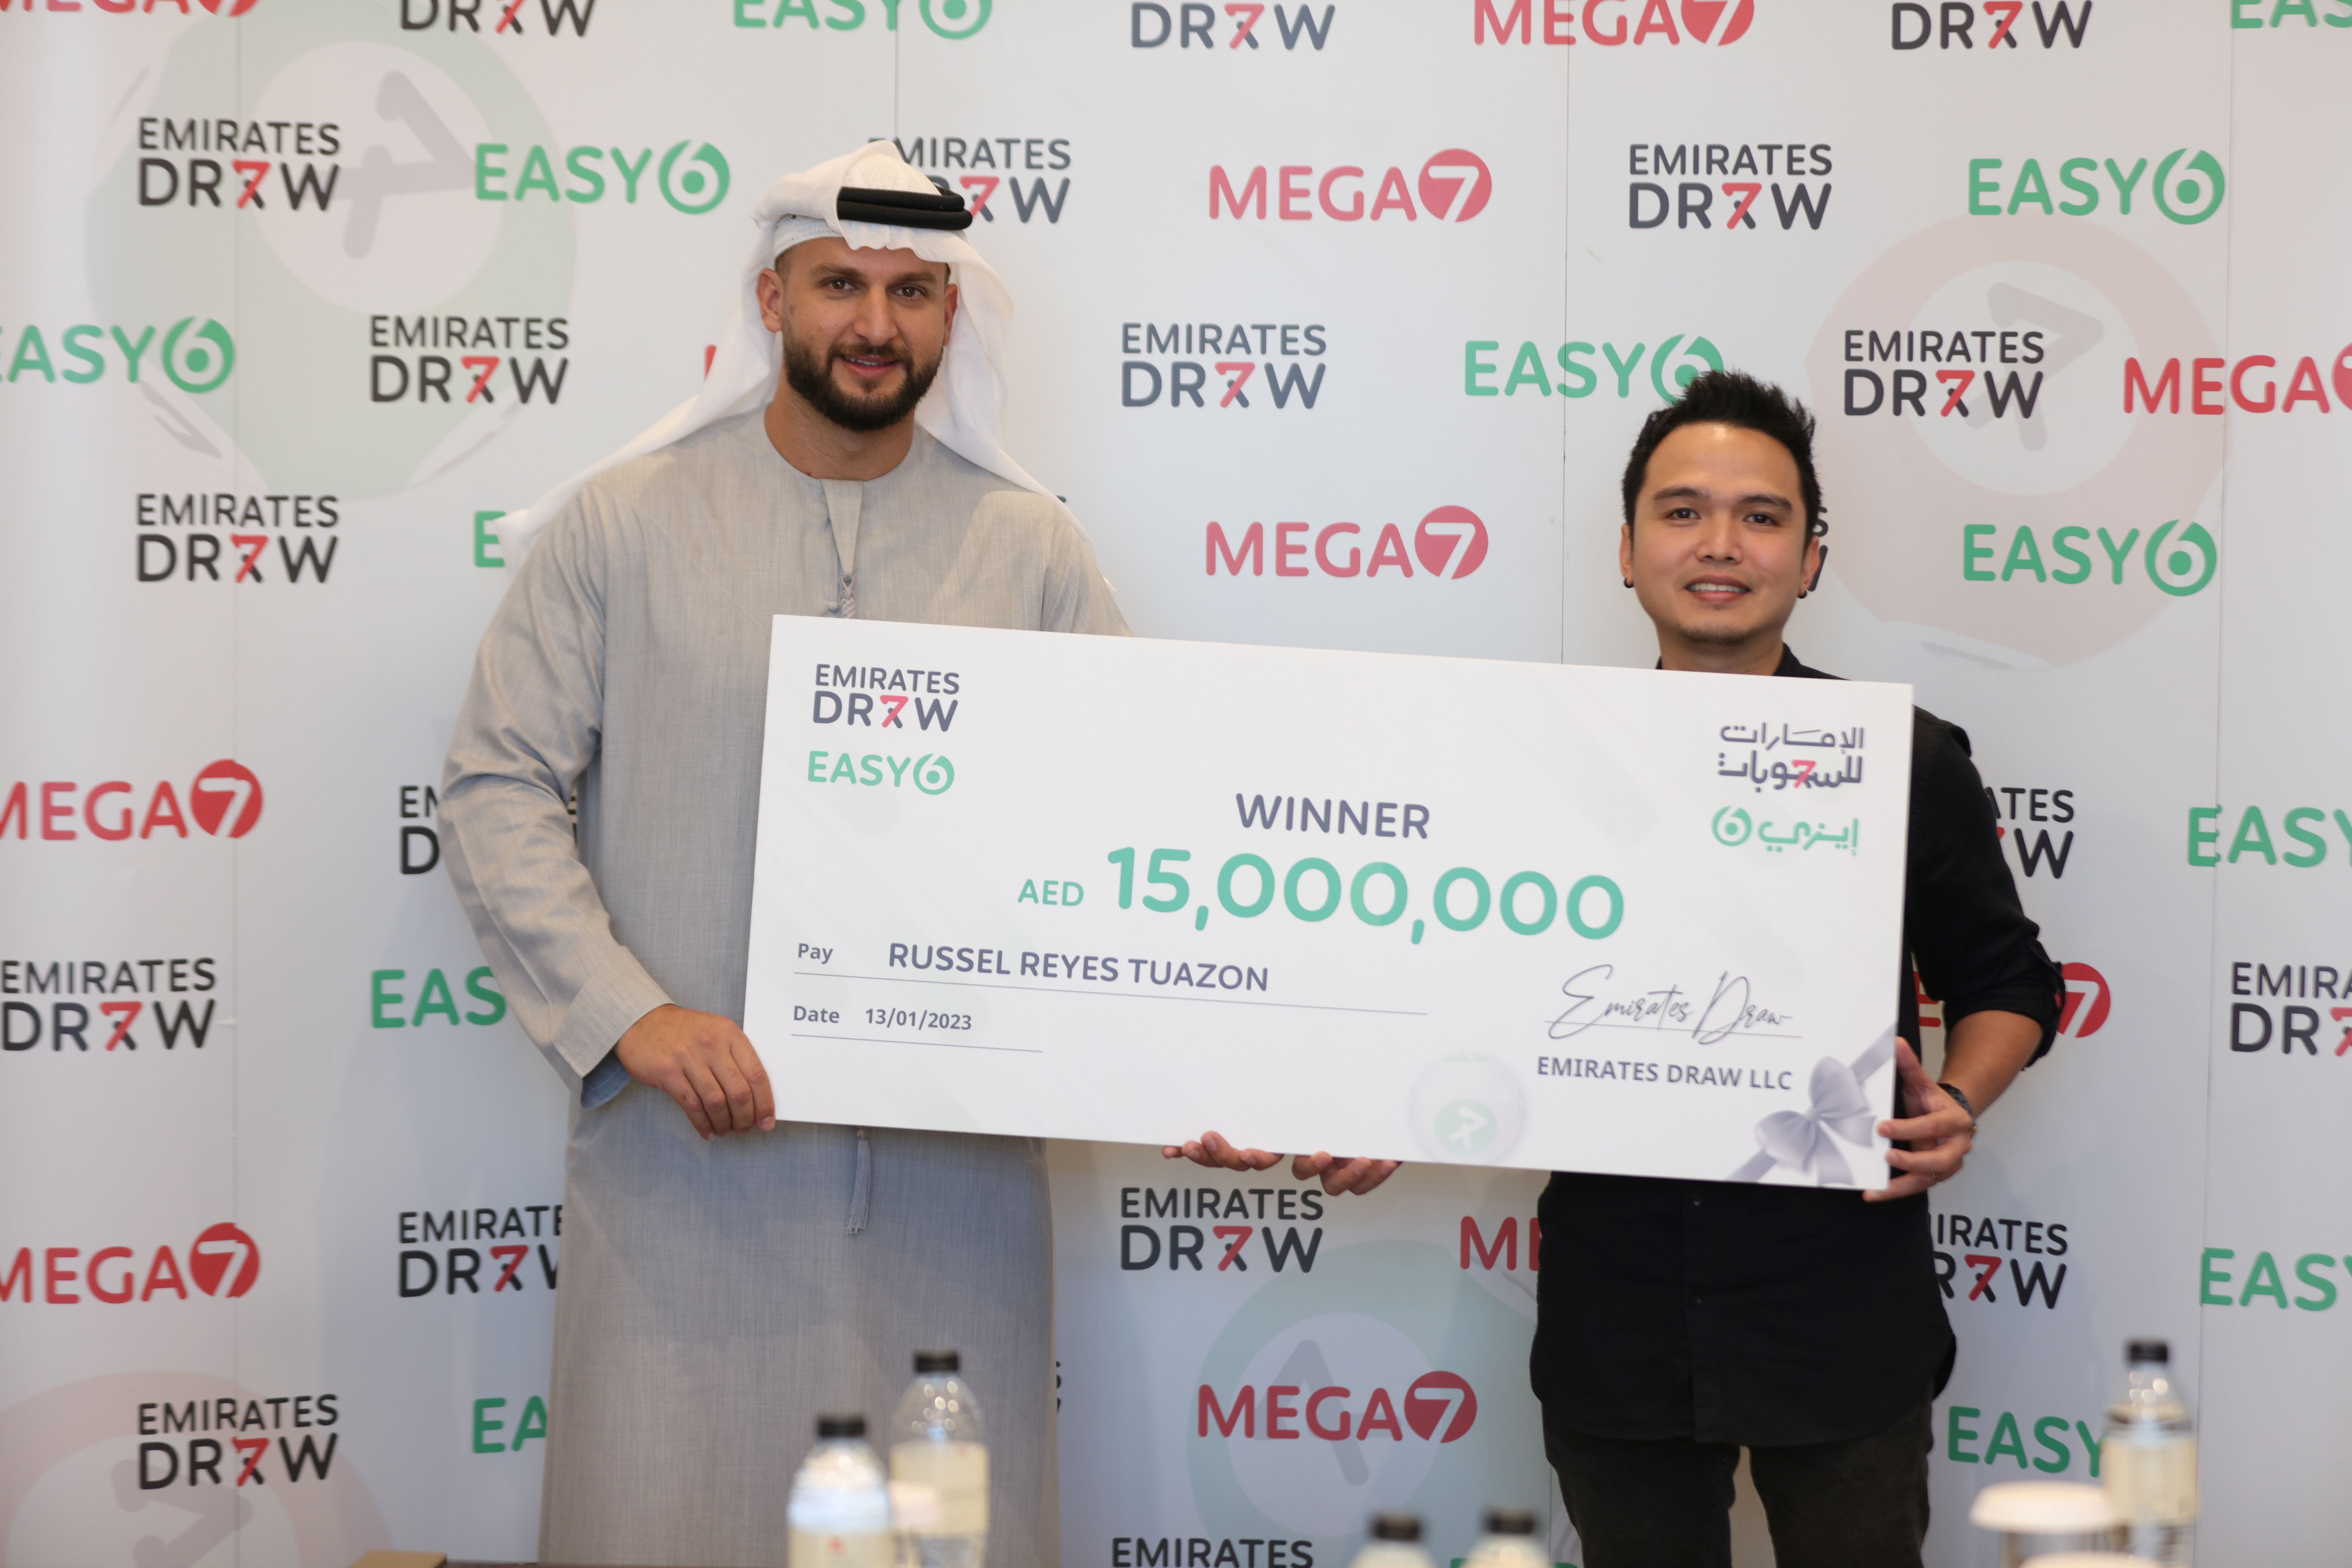 مليونير آخر يفوز بالجائزة الكبرى لسحب الإمارات للسحوبات "إيزي 6"